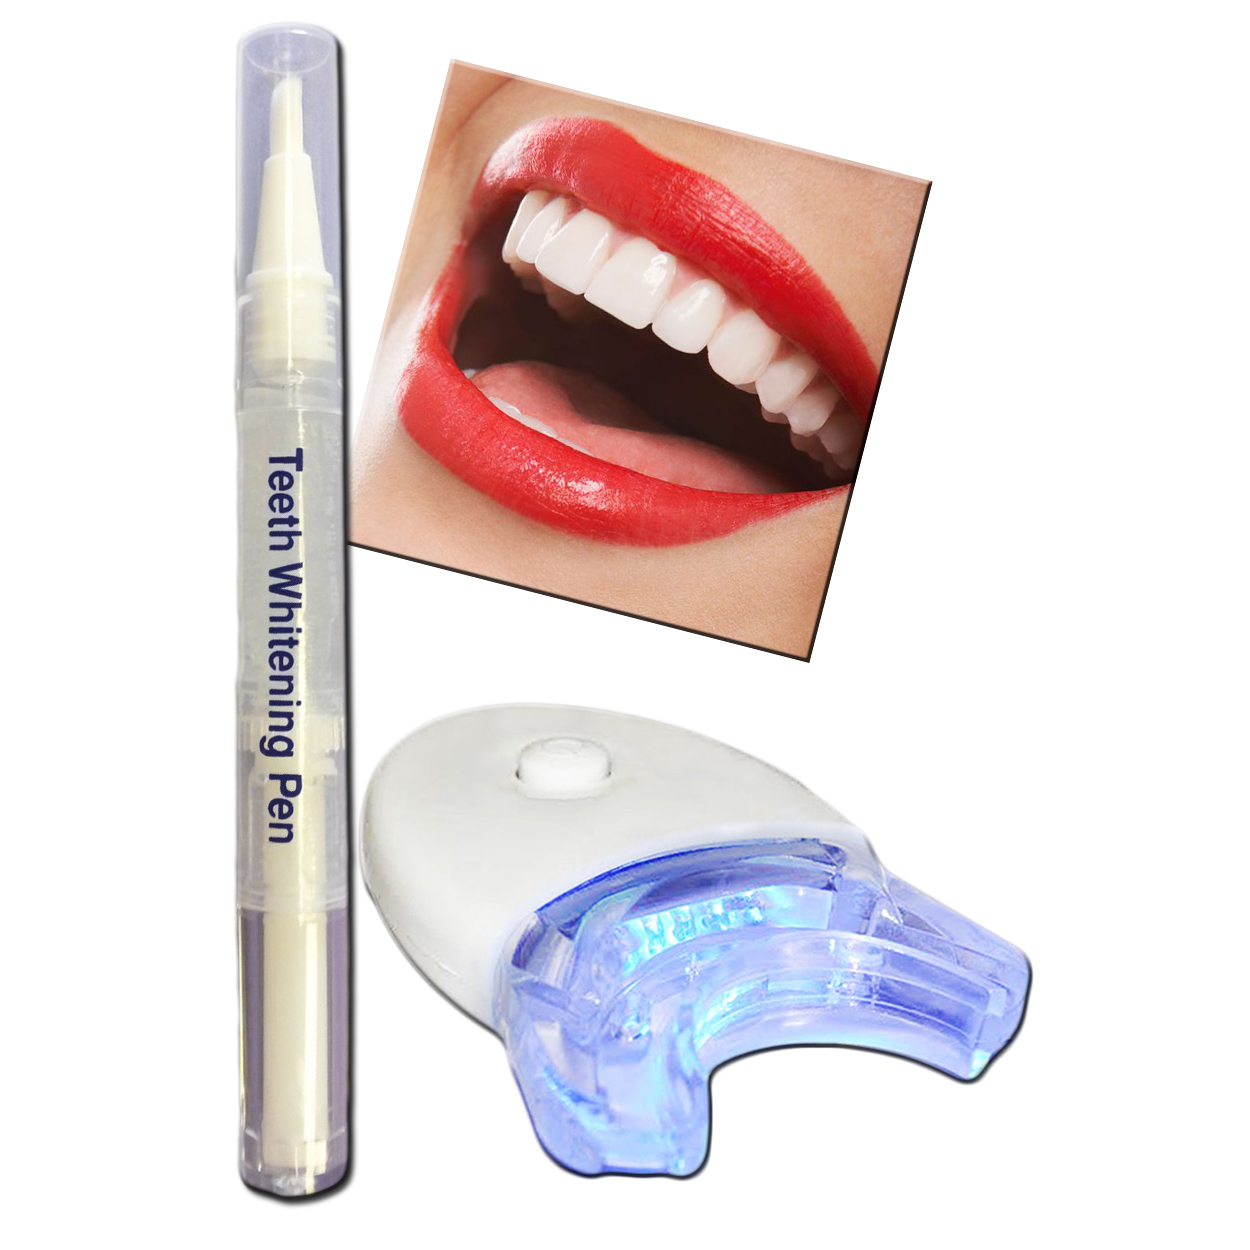 Professional Teeth Whitening Bleaching Dental Gel Kit Tooth Whitener Pen+ Light - $10.95